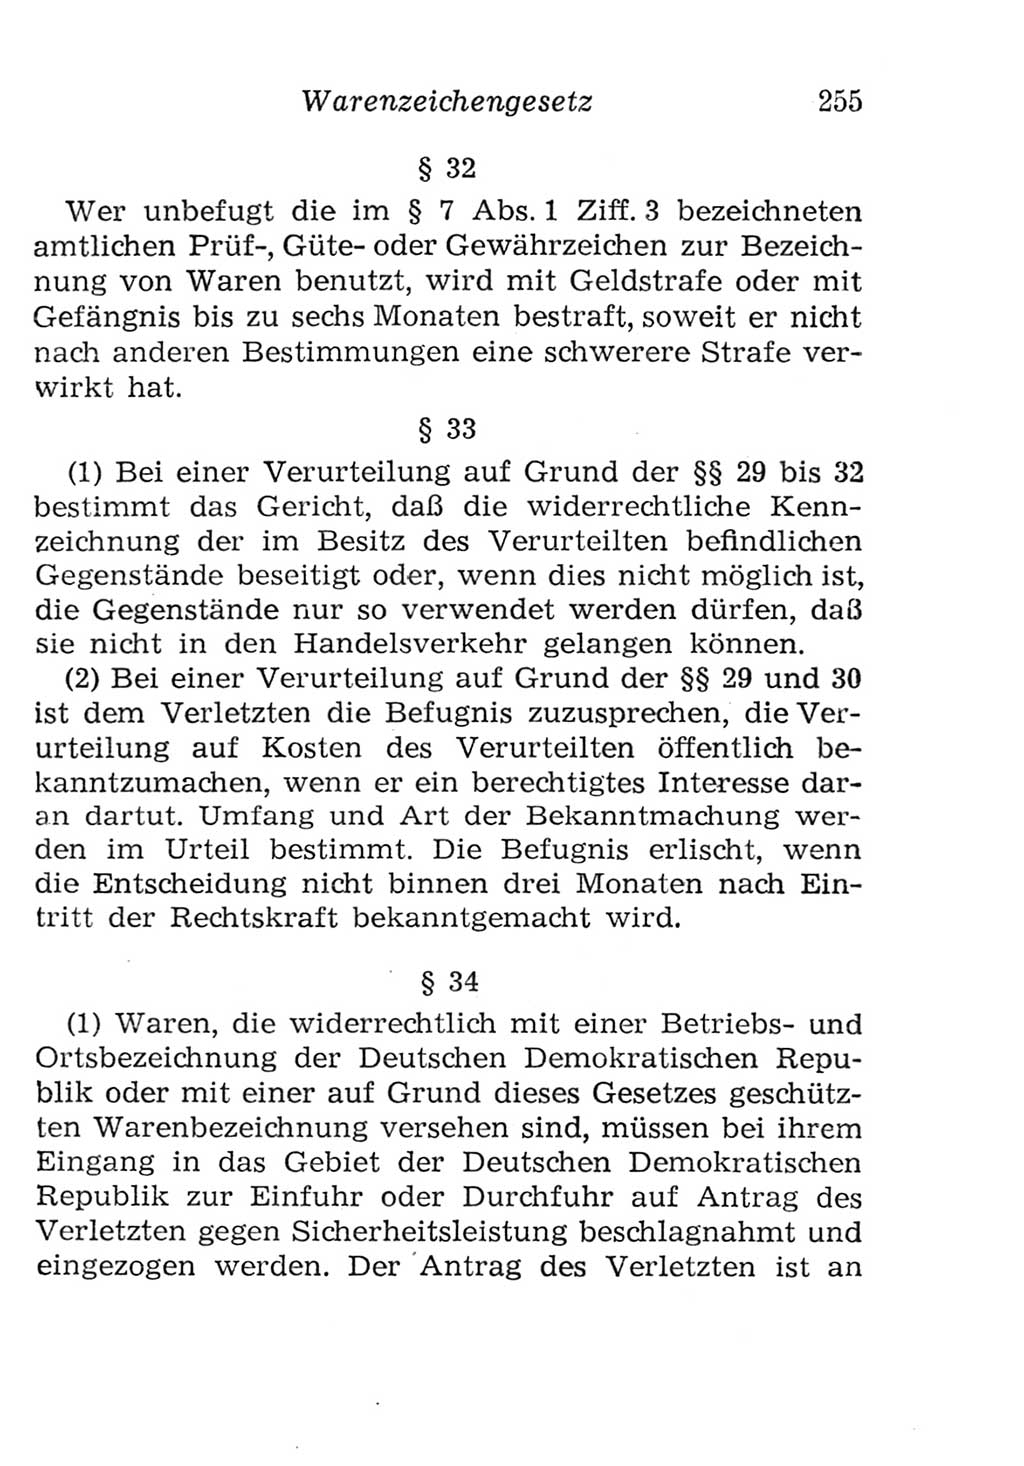 Strafgesetzbuch (StGB) und andere Strafgesetze [Deutsche Demokratische Republik (DDR)] 1957, Seite 255 (StGB Strafges. DDR 1957, S. 255)